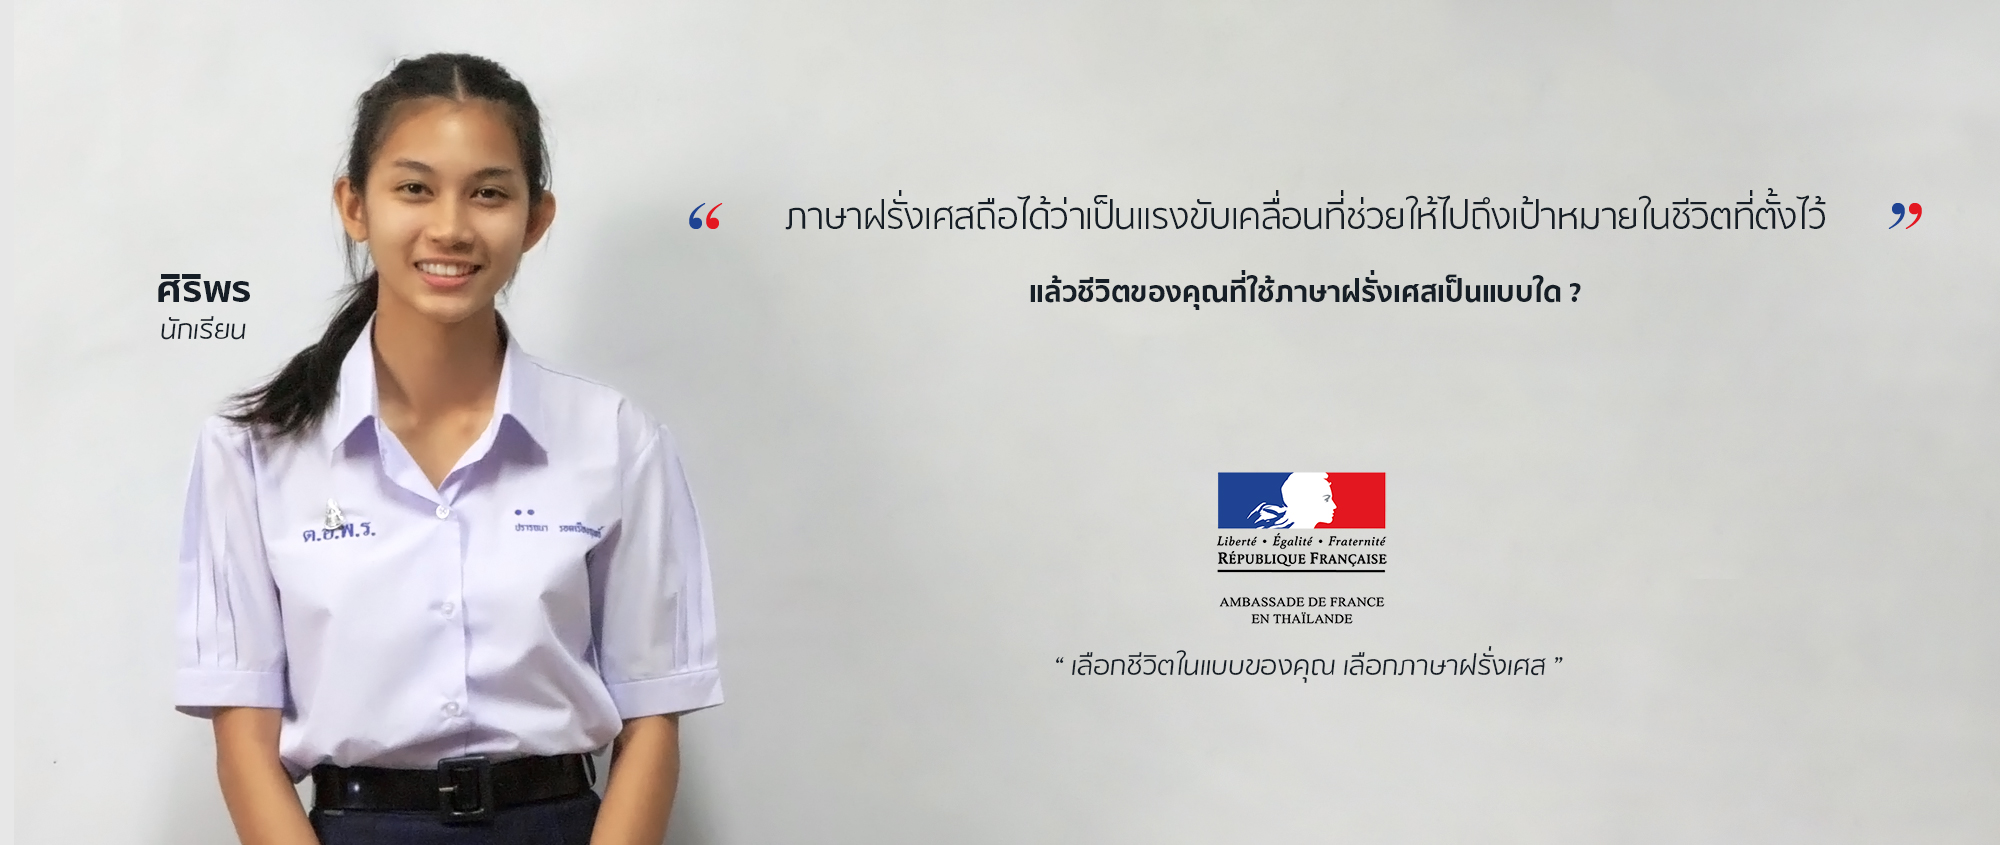 wankhru2019 - cover fb oui, je parle français en thaïlande